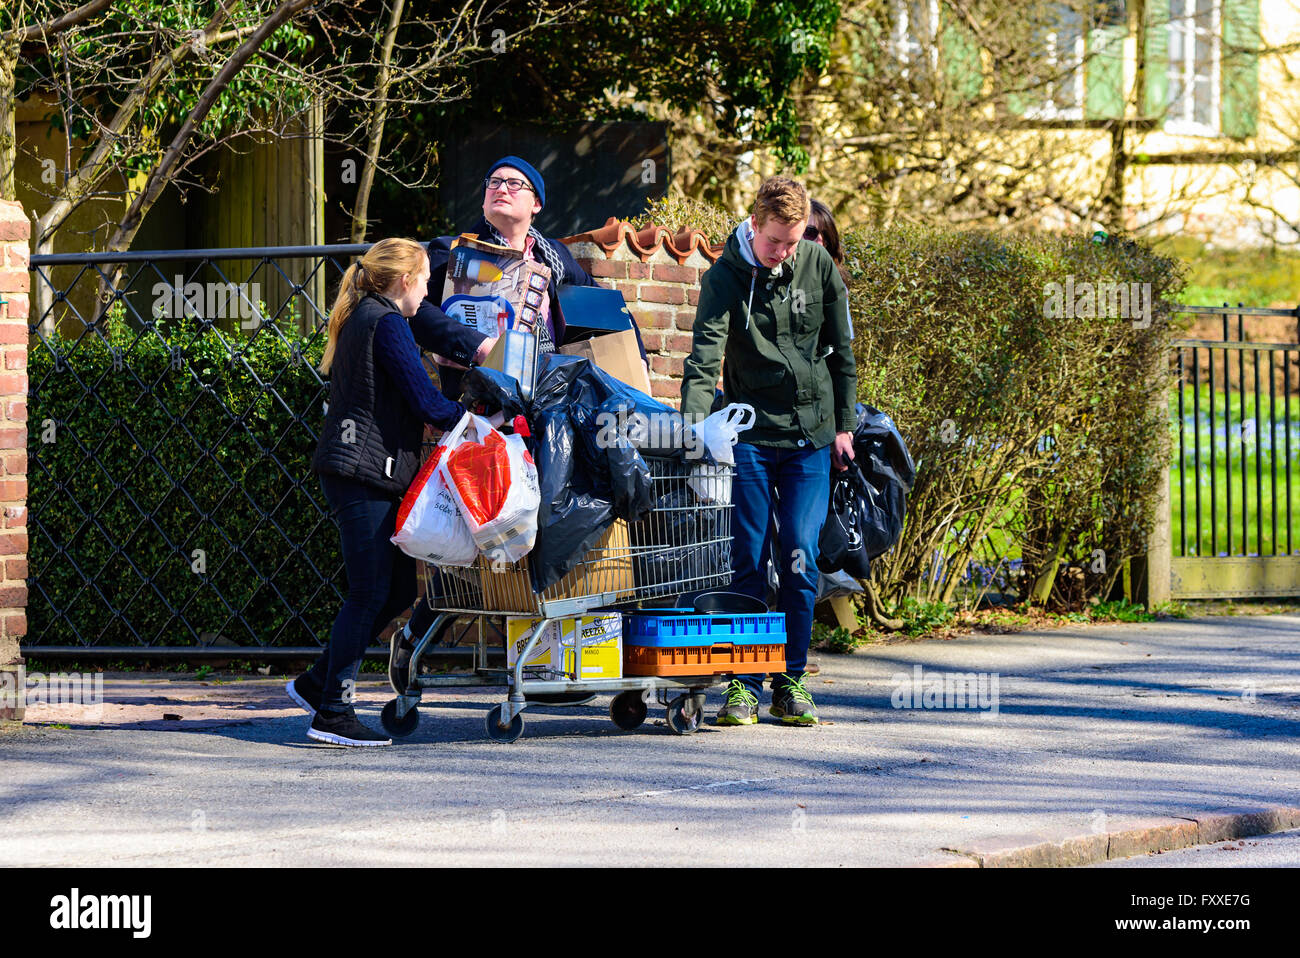 Lund, Suecia - 11 de abril de 2016: la vida real en la ciudad. Algunas personas adultas jóvenes se ayudan mutuamente para mover cosas con un coche de compras Foto de stock